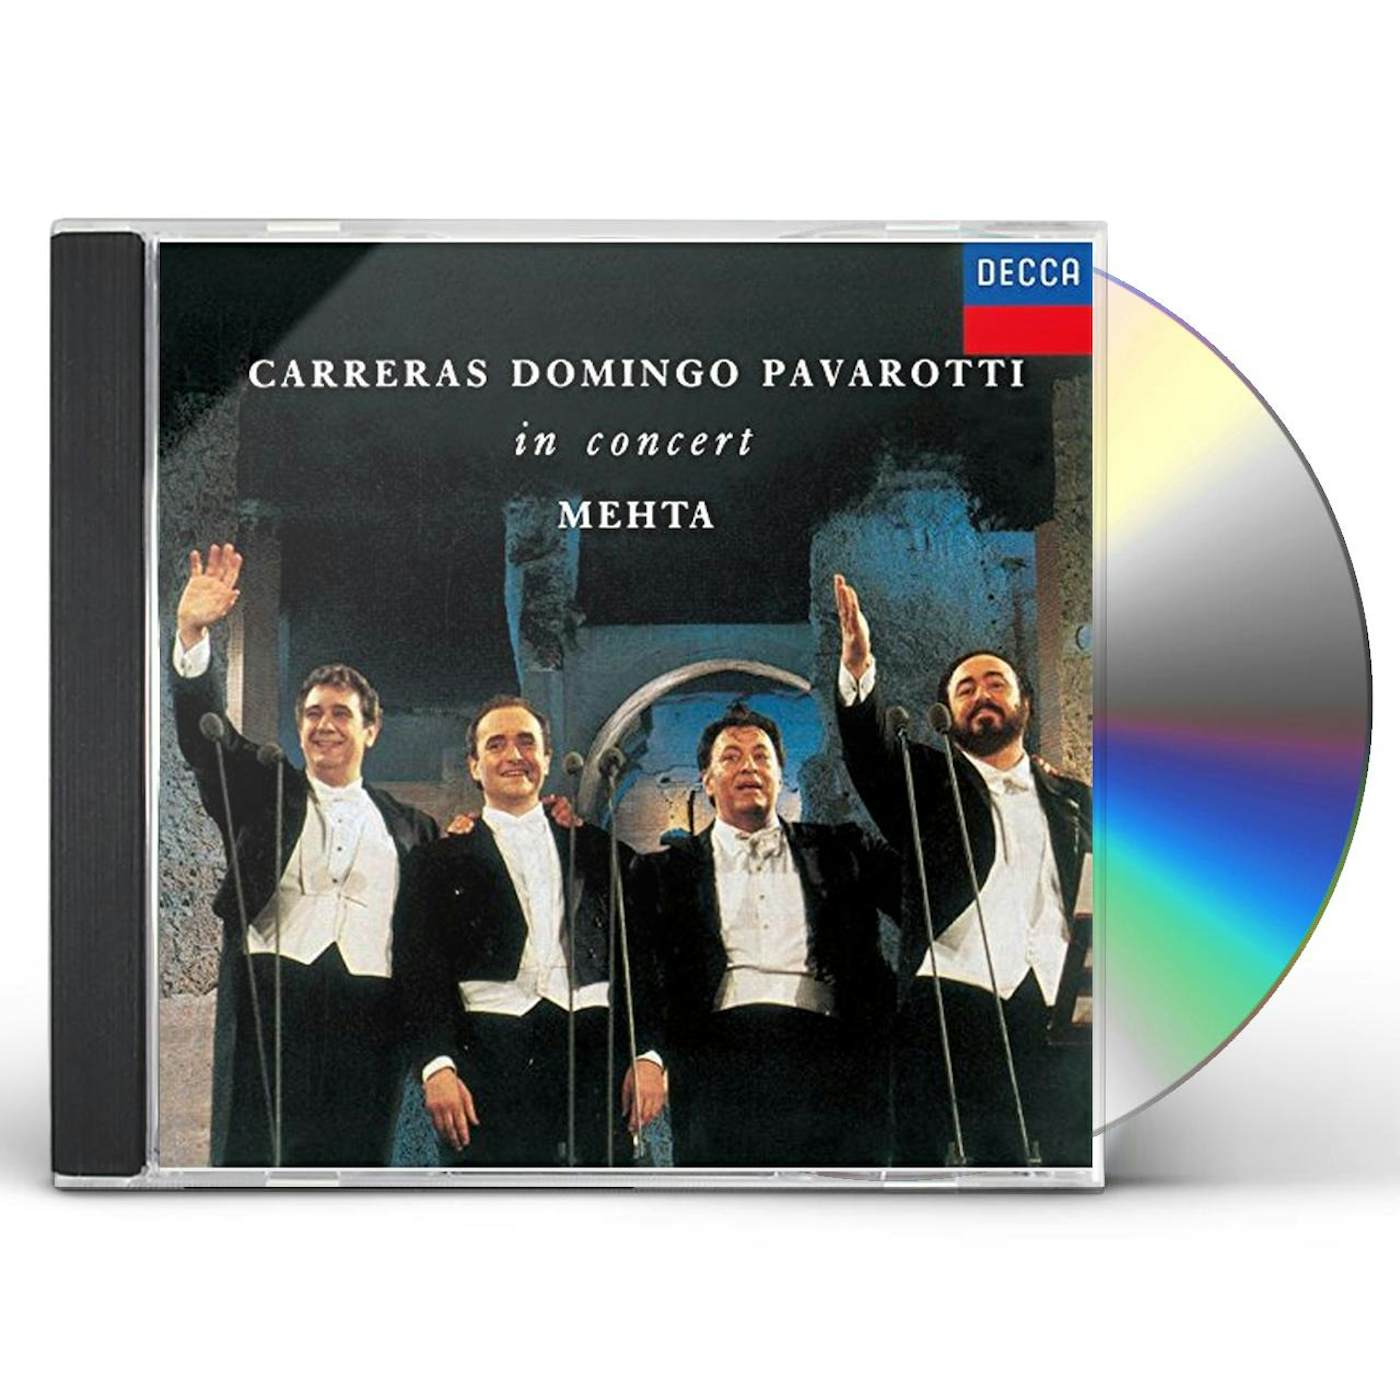 CARRERAS DOMINGO Luciano Pavarotti IN CONCERT CD